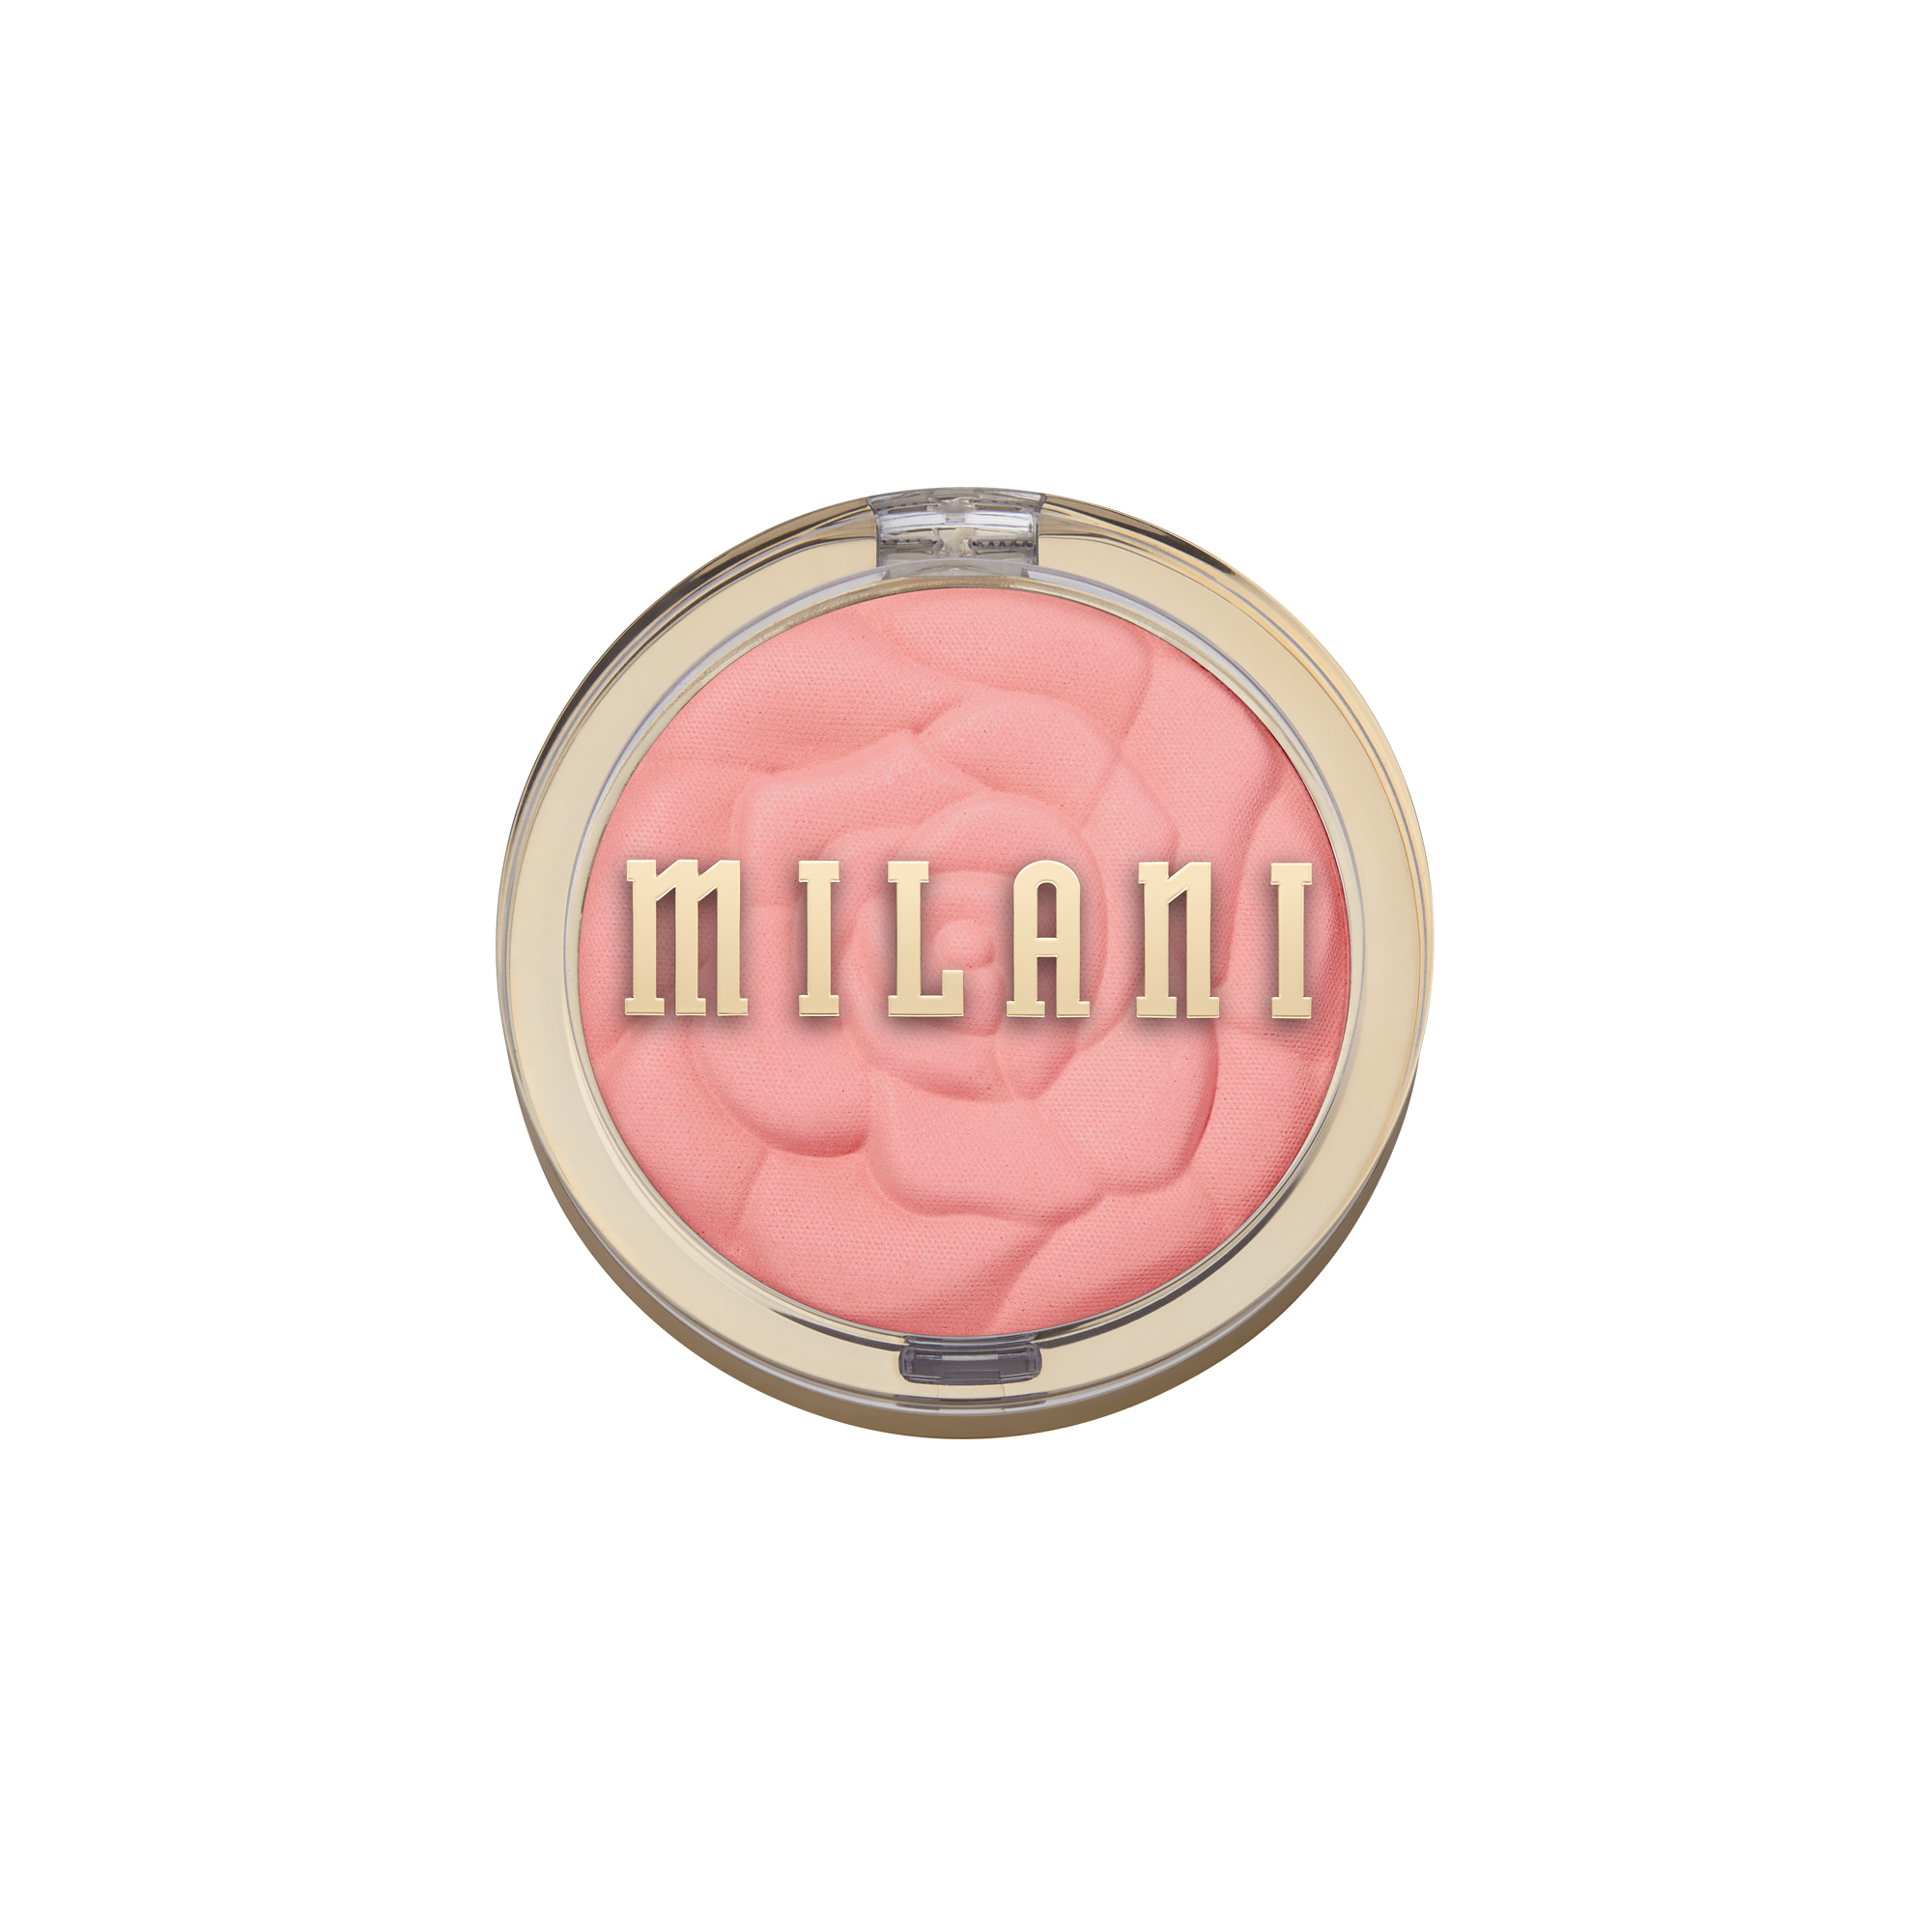 Milani Powder Blush, Tea Rose - image 1 of 7